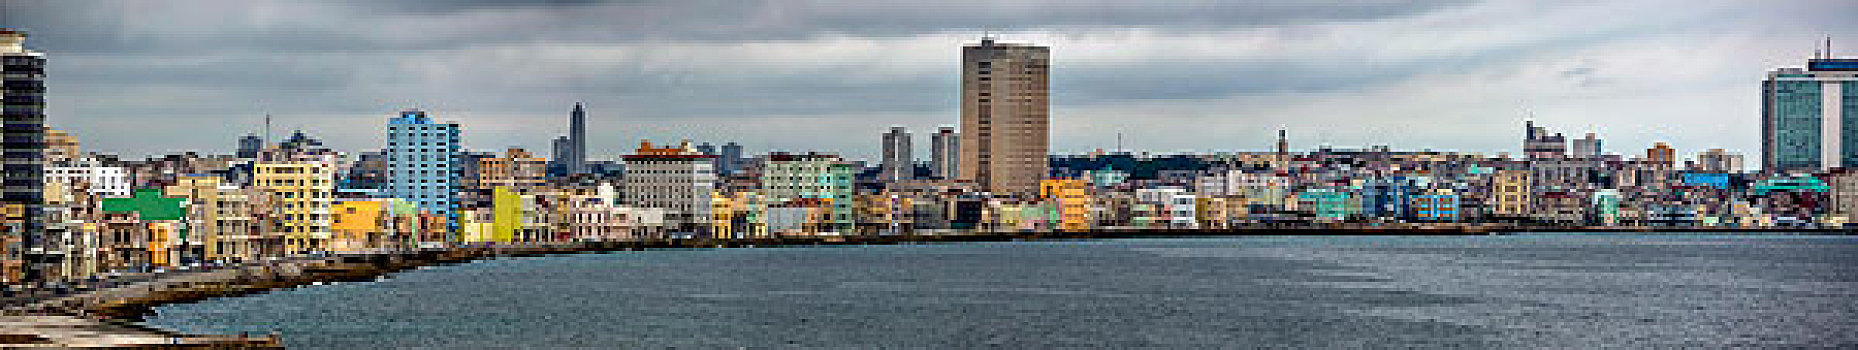 哈瓦那,湾,港口,哈瓦那旧城,马雷贡,古巴,北美